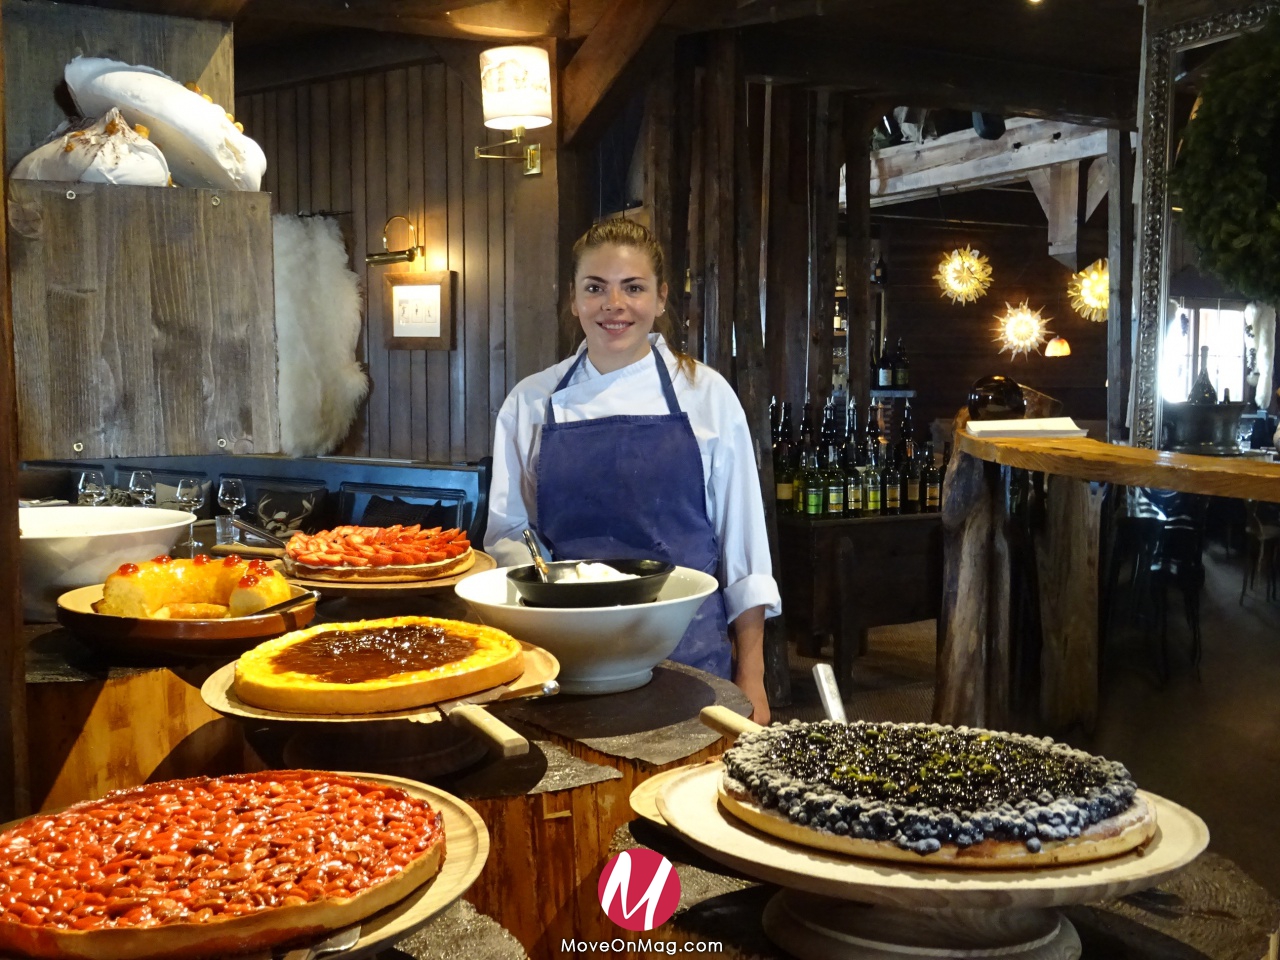 La cheffe pâtissière du restaurant "La table de Jeanne" au Panoramic à Tignes ©Move-On Magazine